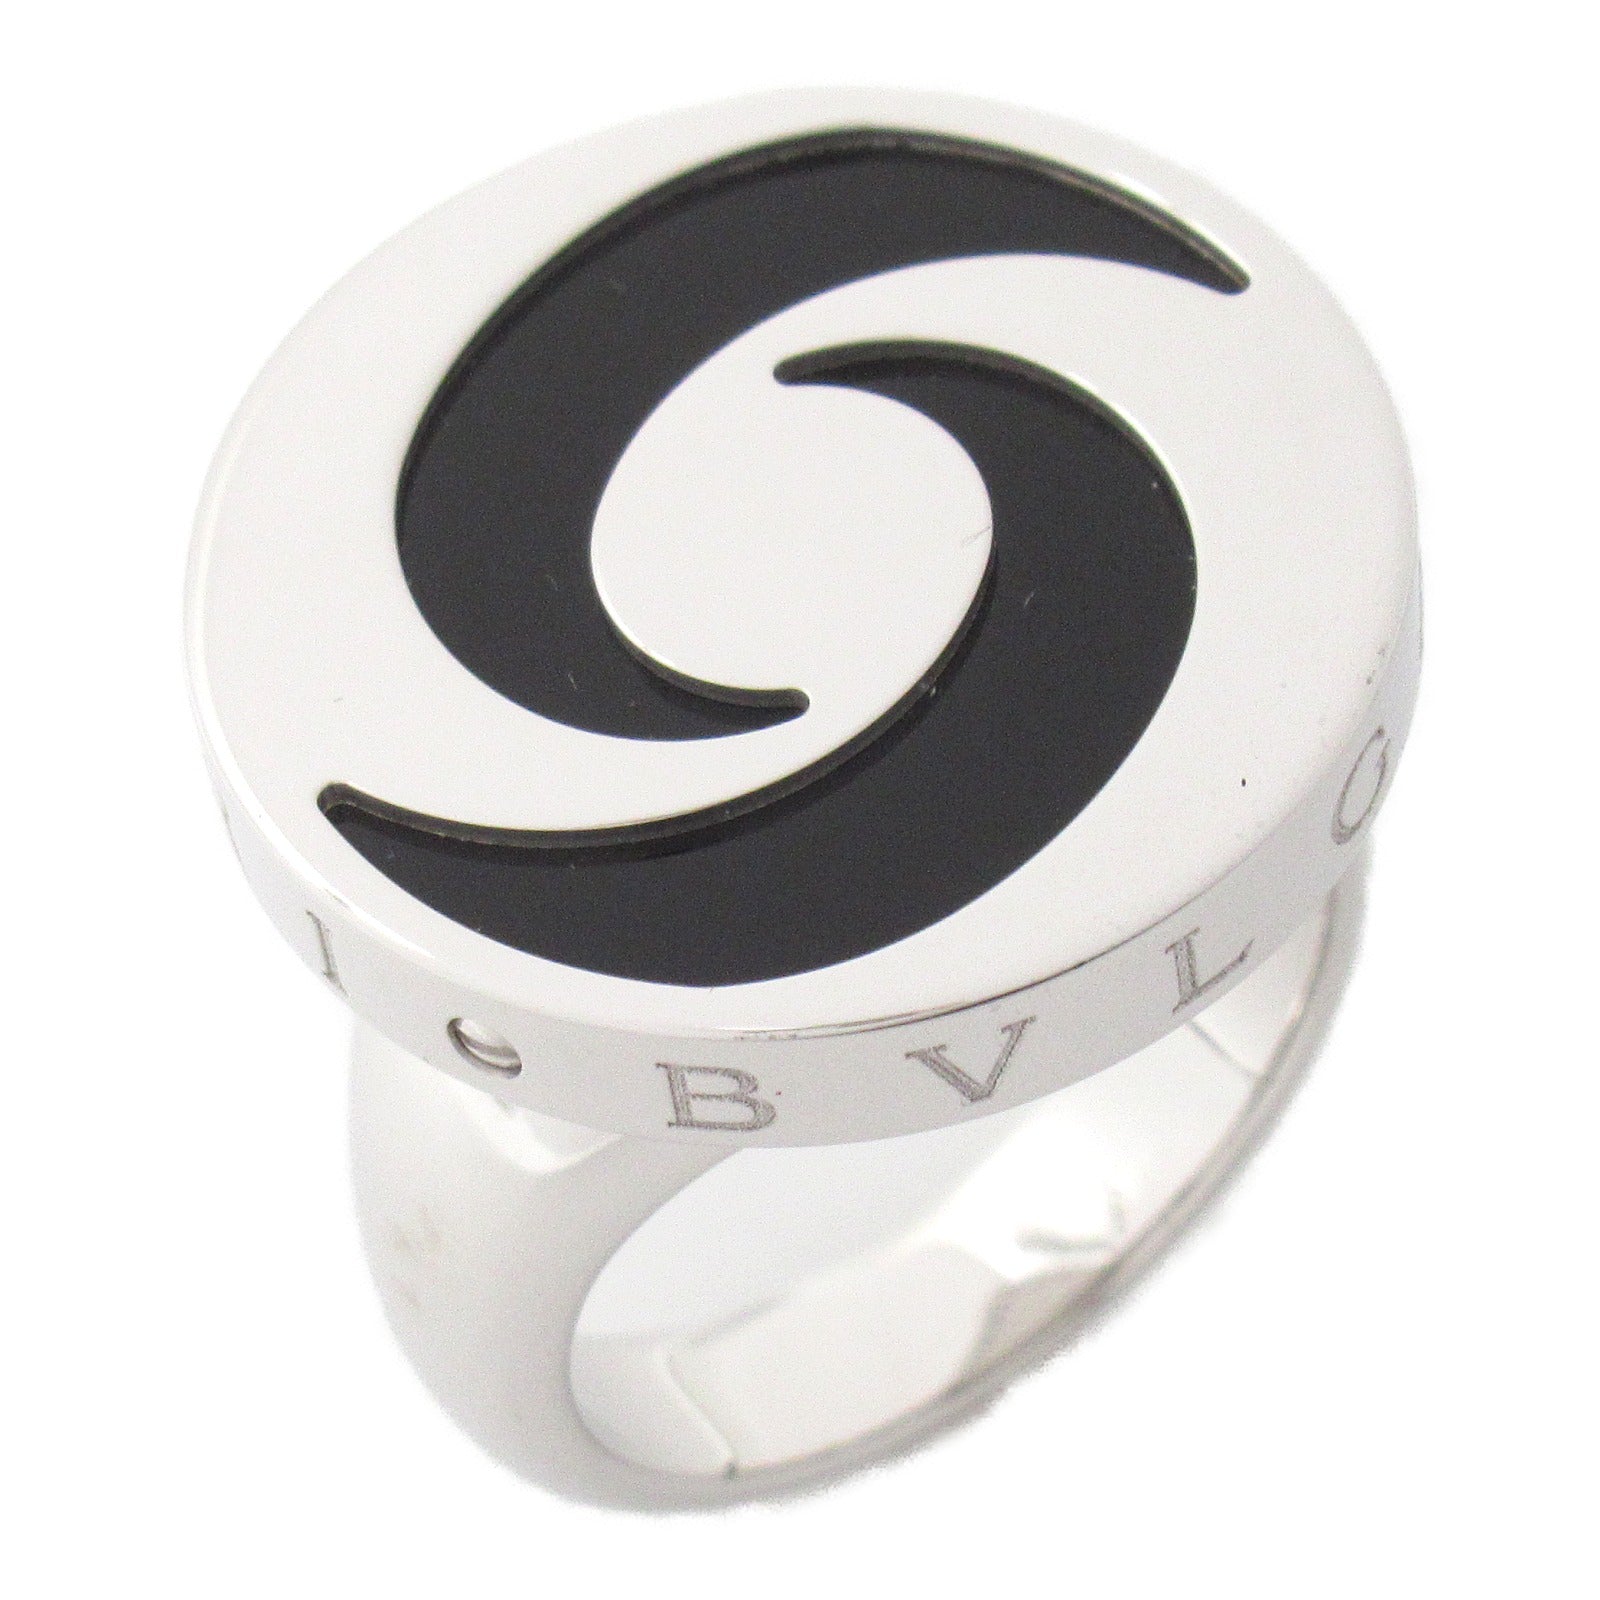 Bulgari BVLGARI Optical Onyx Ring Ring Ring Jewelry K18WG (White G) Stainless Steel Onyx   Black Close-up